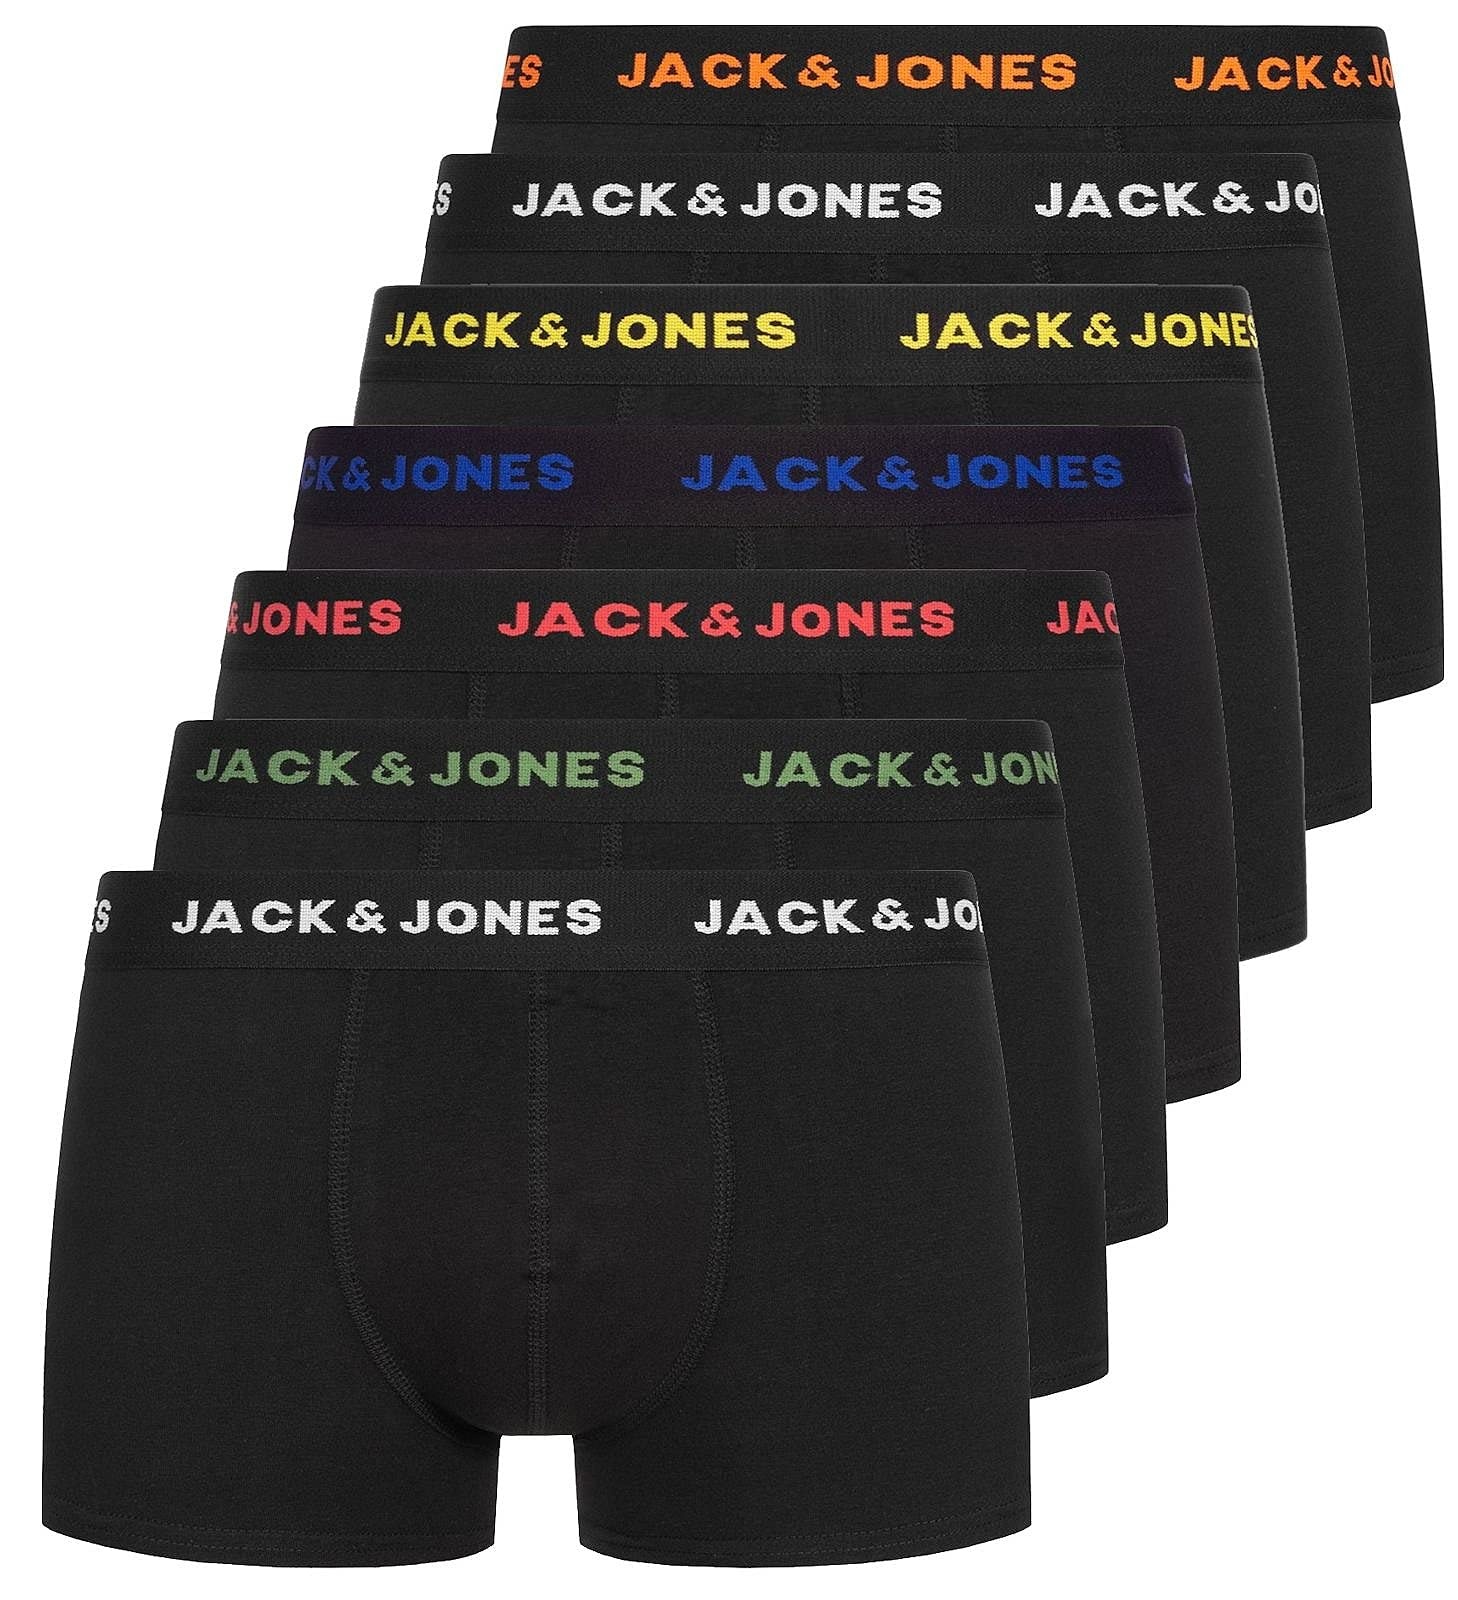 JACK & JONES Herren JACBASIC Trunks 7 Pack NOOS 12165587, Black/Black - Black - Black -, S